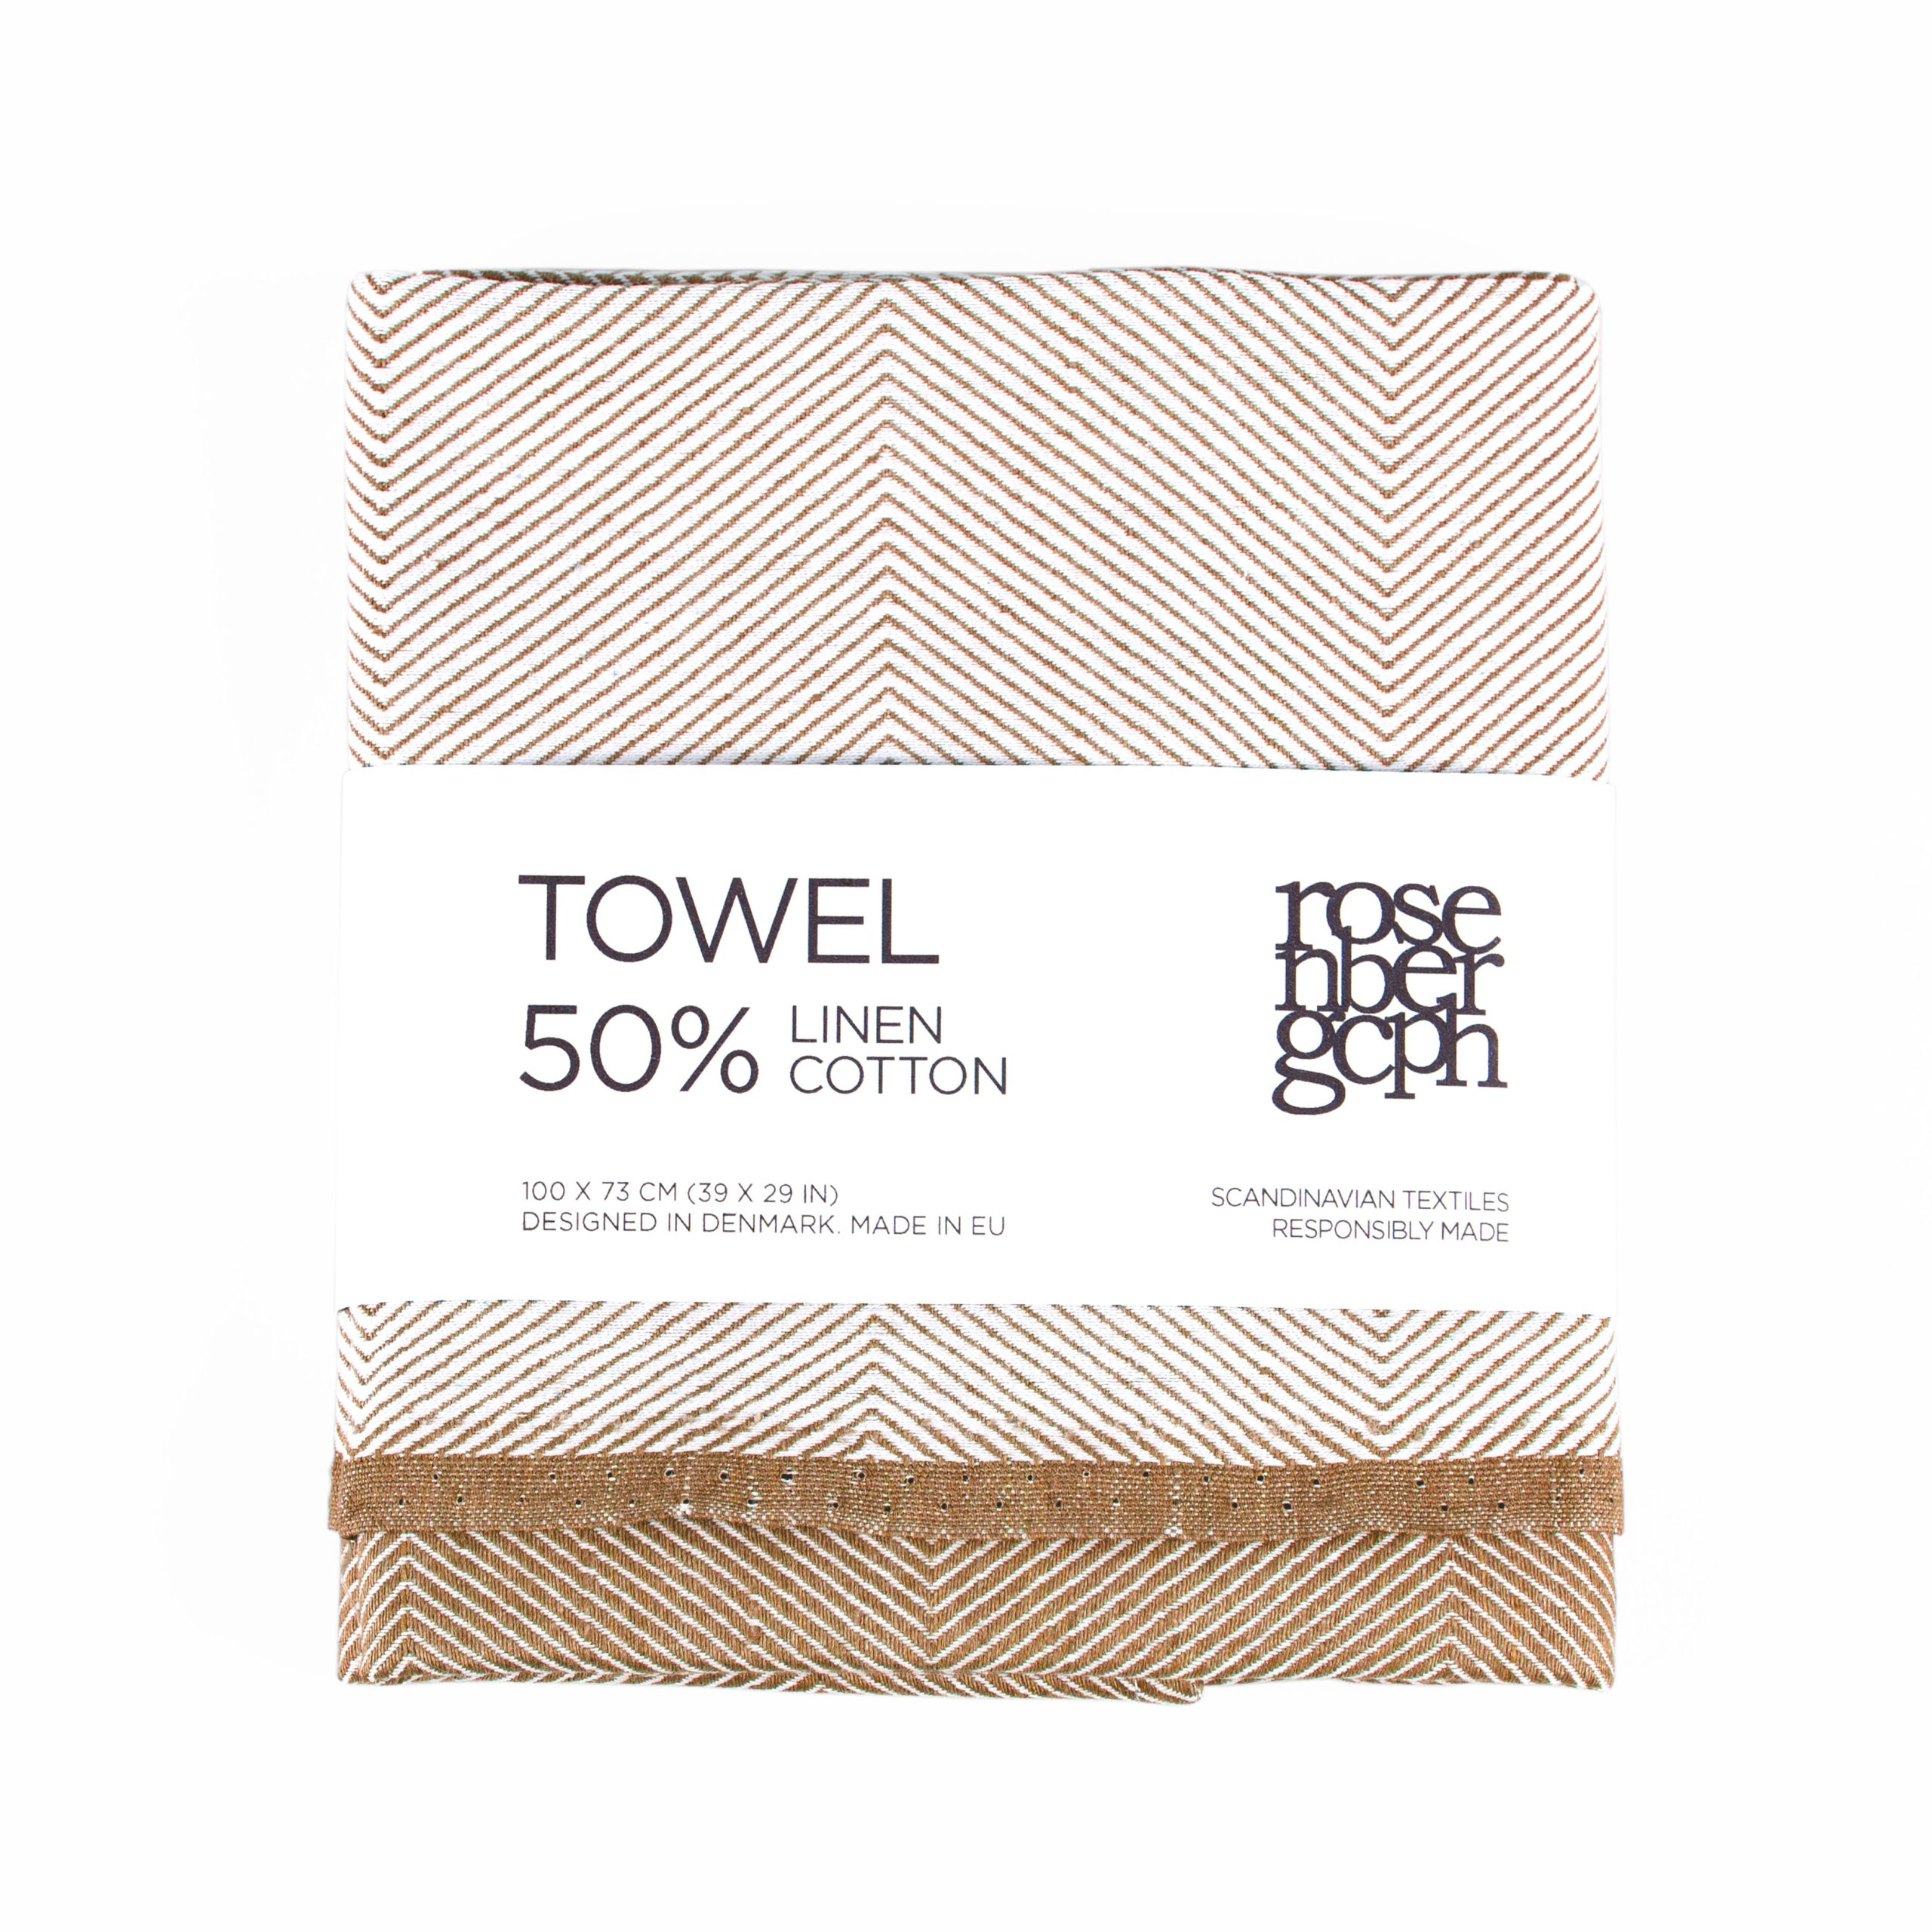 Håndklæde, mandel, hør/bomuld, design af Anne Rosenberg, RosenbergCph